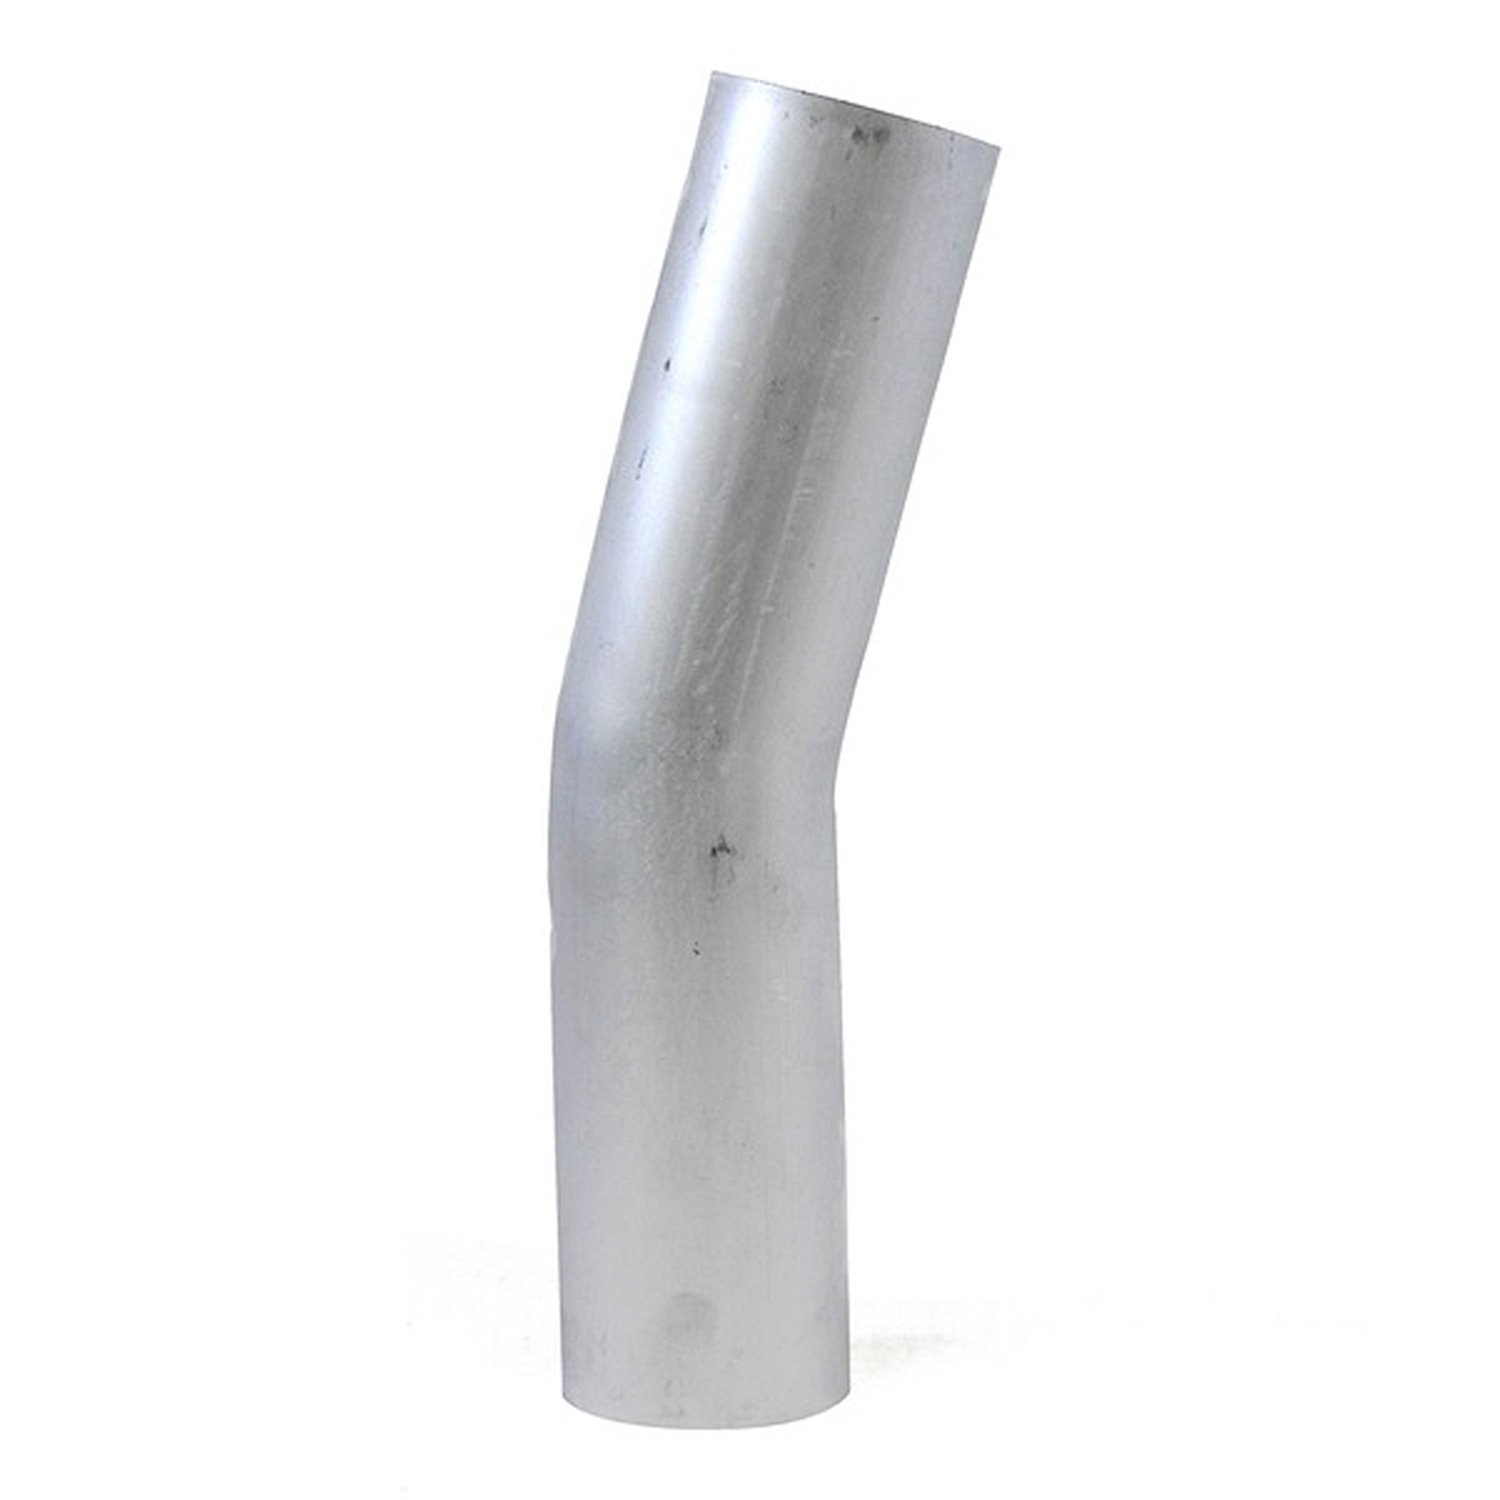 AT15-350-CLR-56 Aluminum Elbow Tube, 6061 Aluminum, 15-Degree Bend Elbow Tubing, 3-1/2 in. OD, Large Radius, 5-5/8 in. CLR